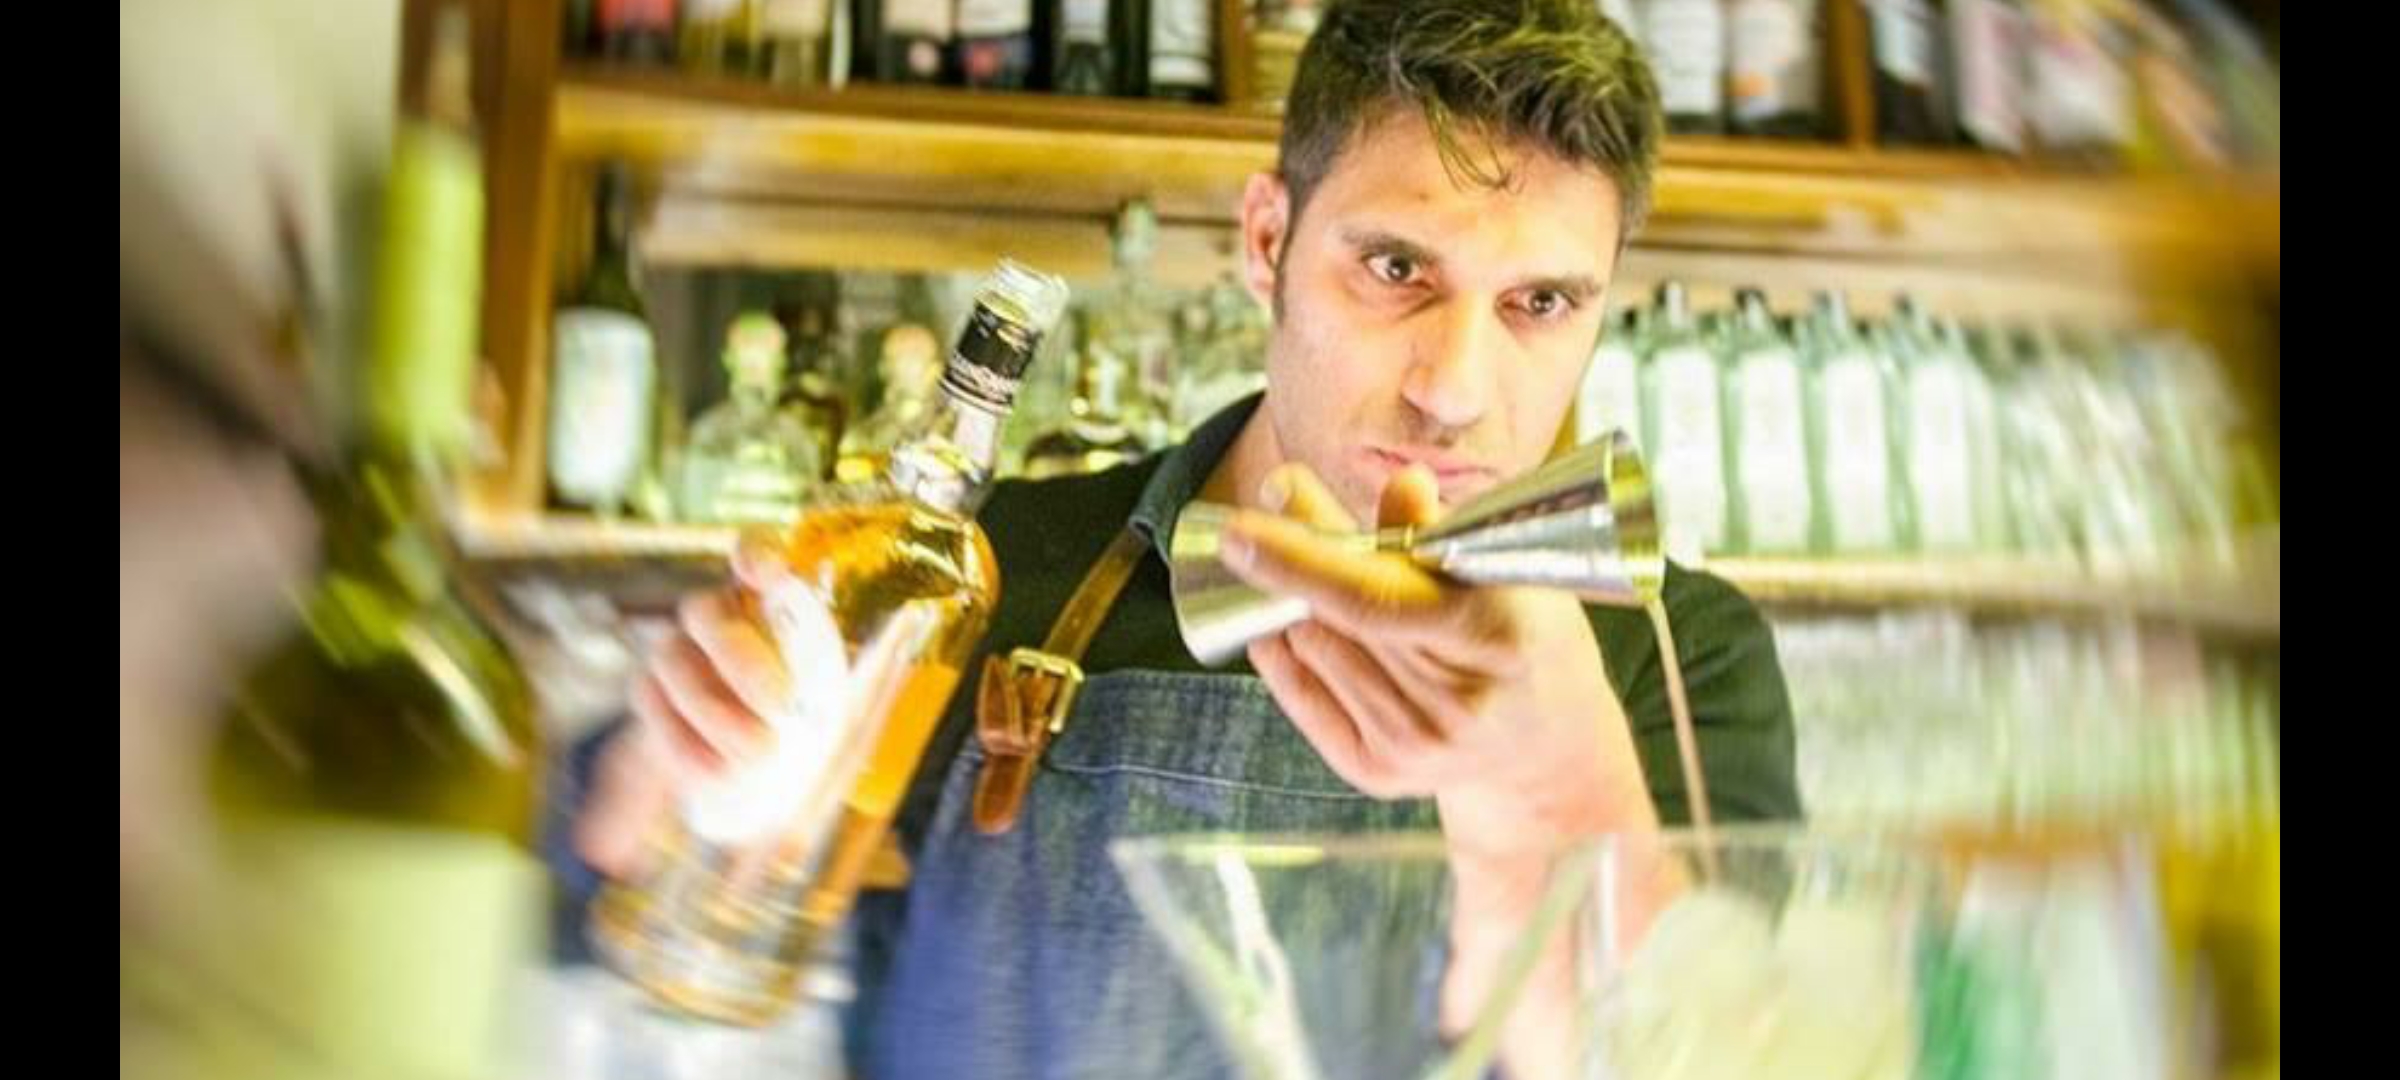 Milazzo, i cocktail di Peppe Gitto al concorso regionale per ambire ai Mondiali dei bartender